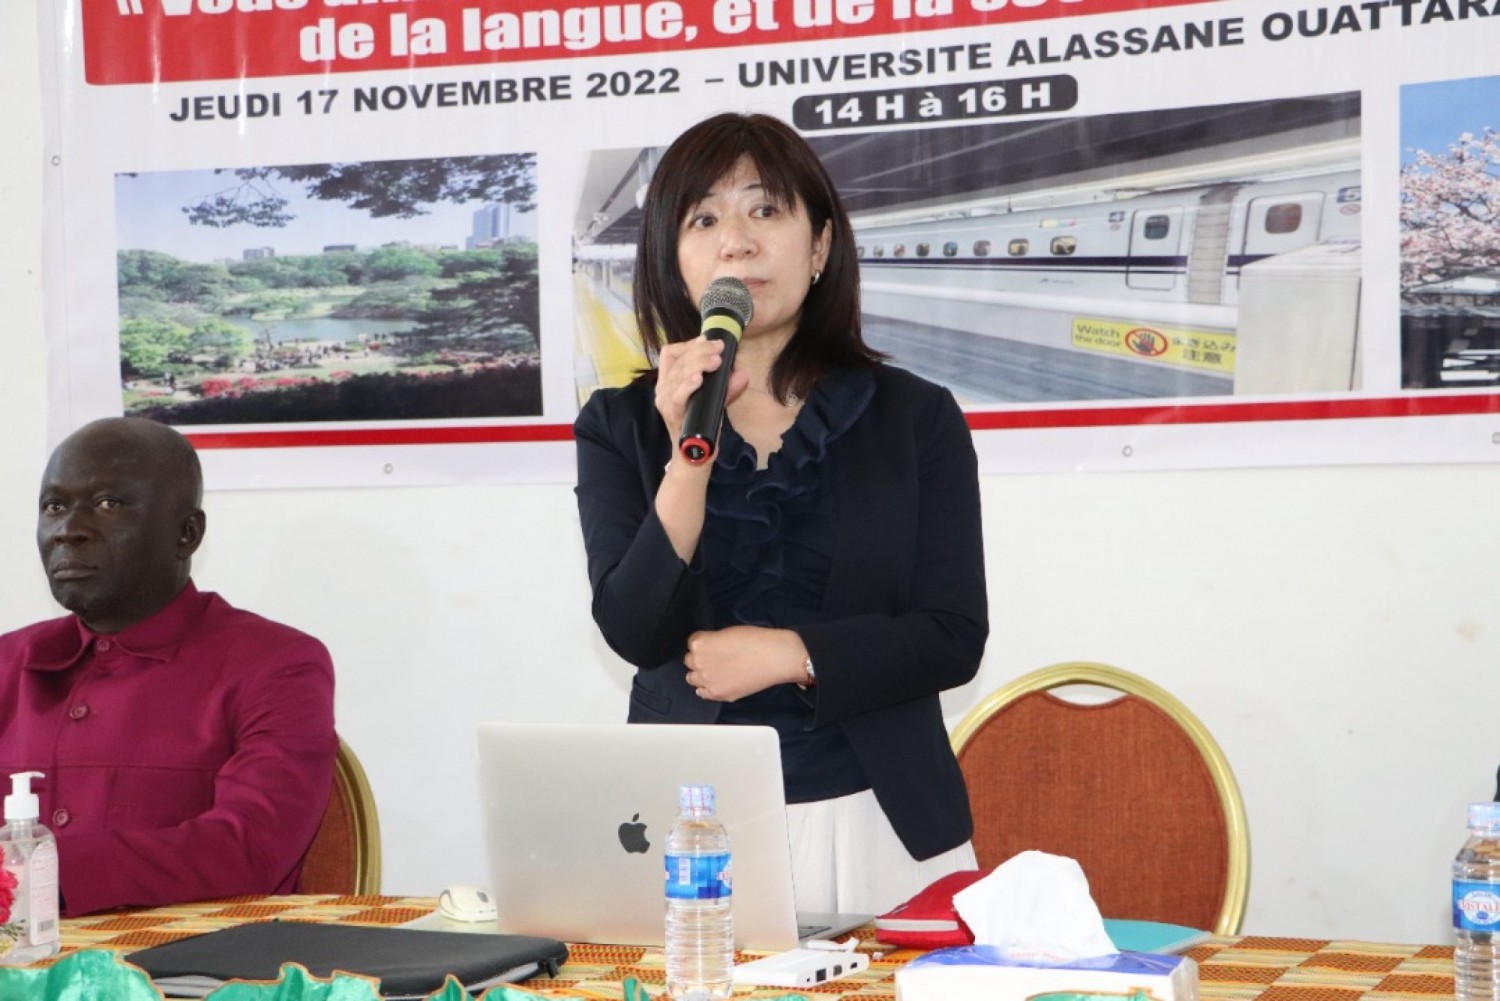 Côte d'Ivoire : Bouaké, la culture japonaise et l'apprentissage du japonais présentés aux étudiants de l'UAO